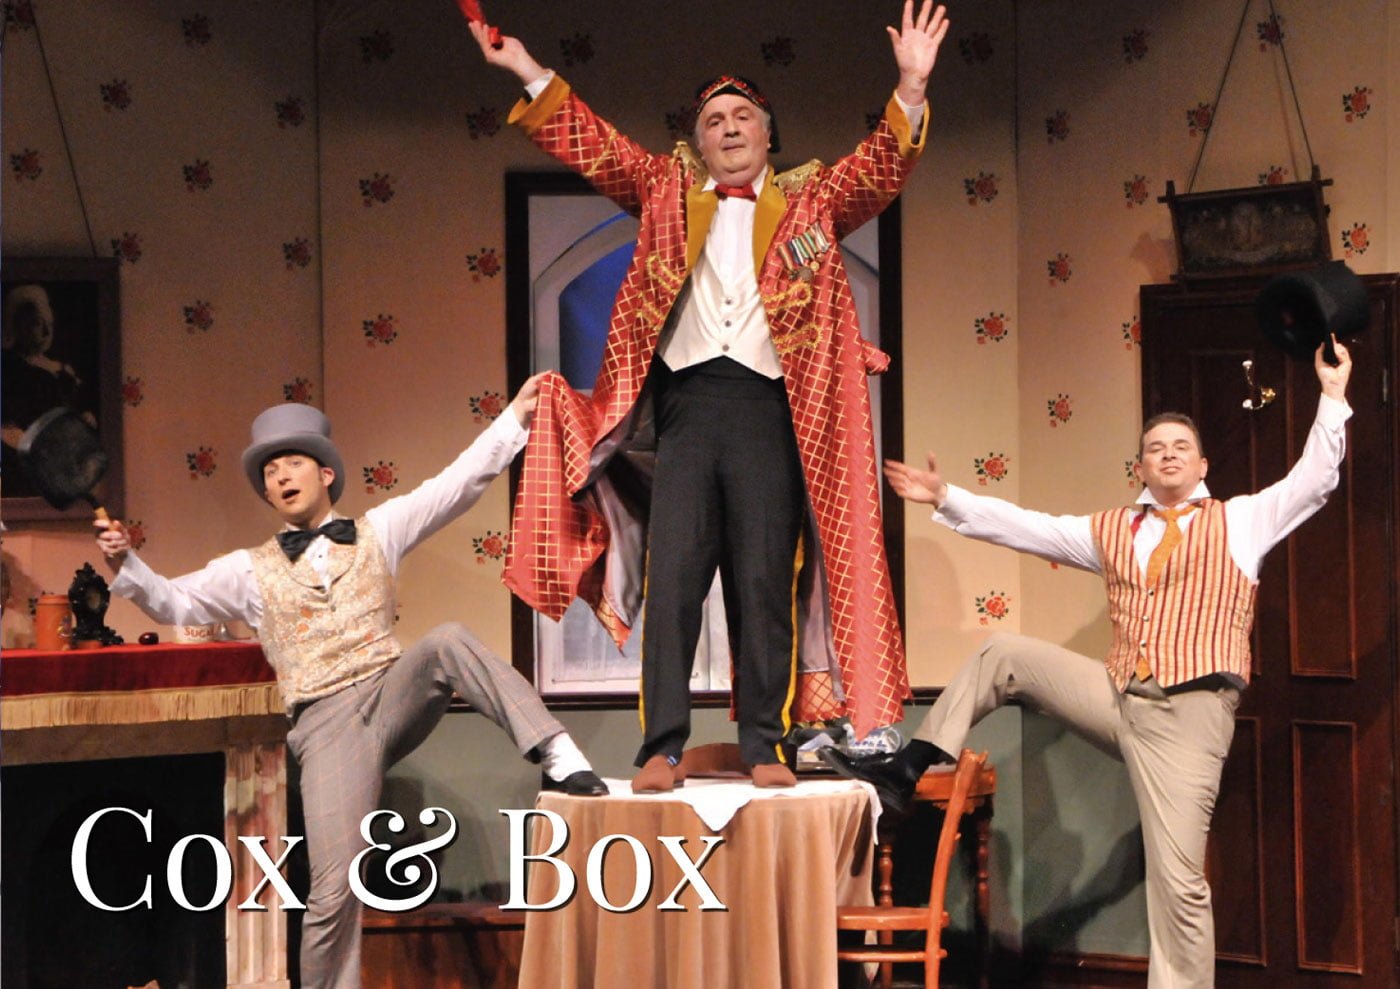 Cox & Box - Season 2019 ~ Gilbert & Sullivan Opera Victoria